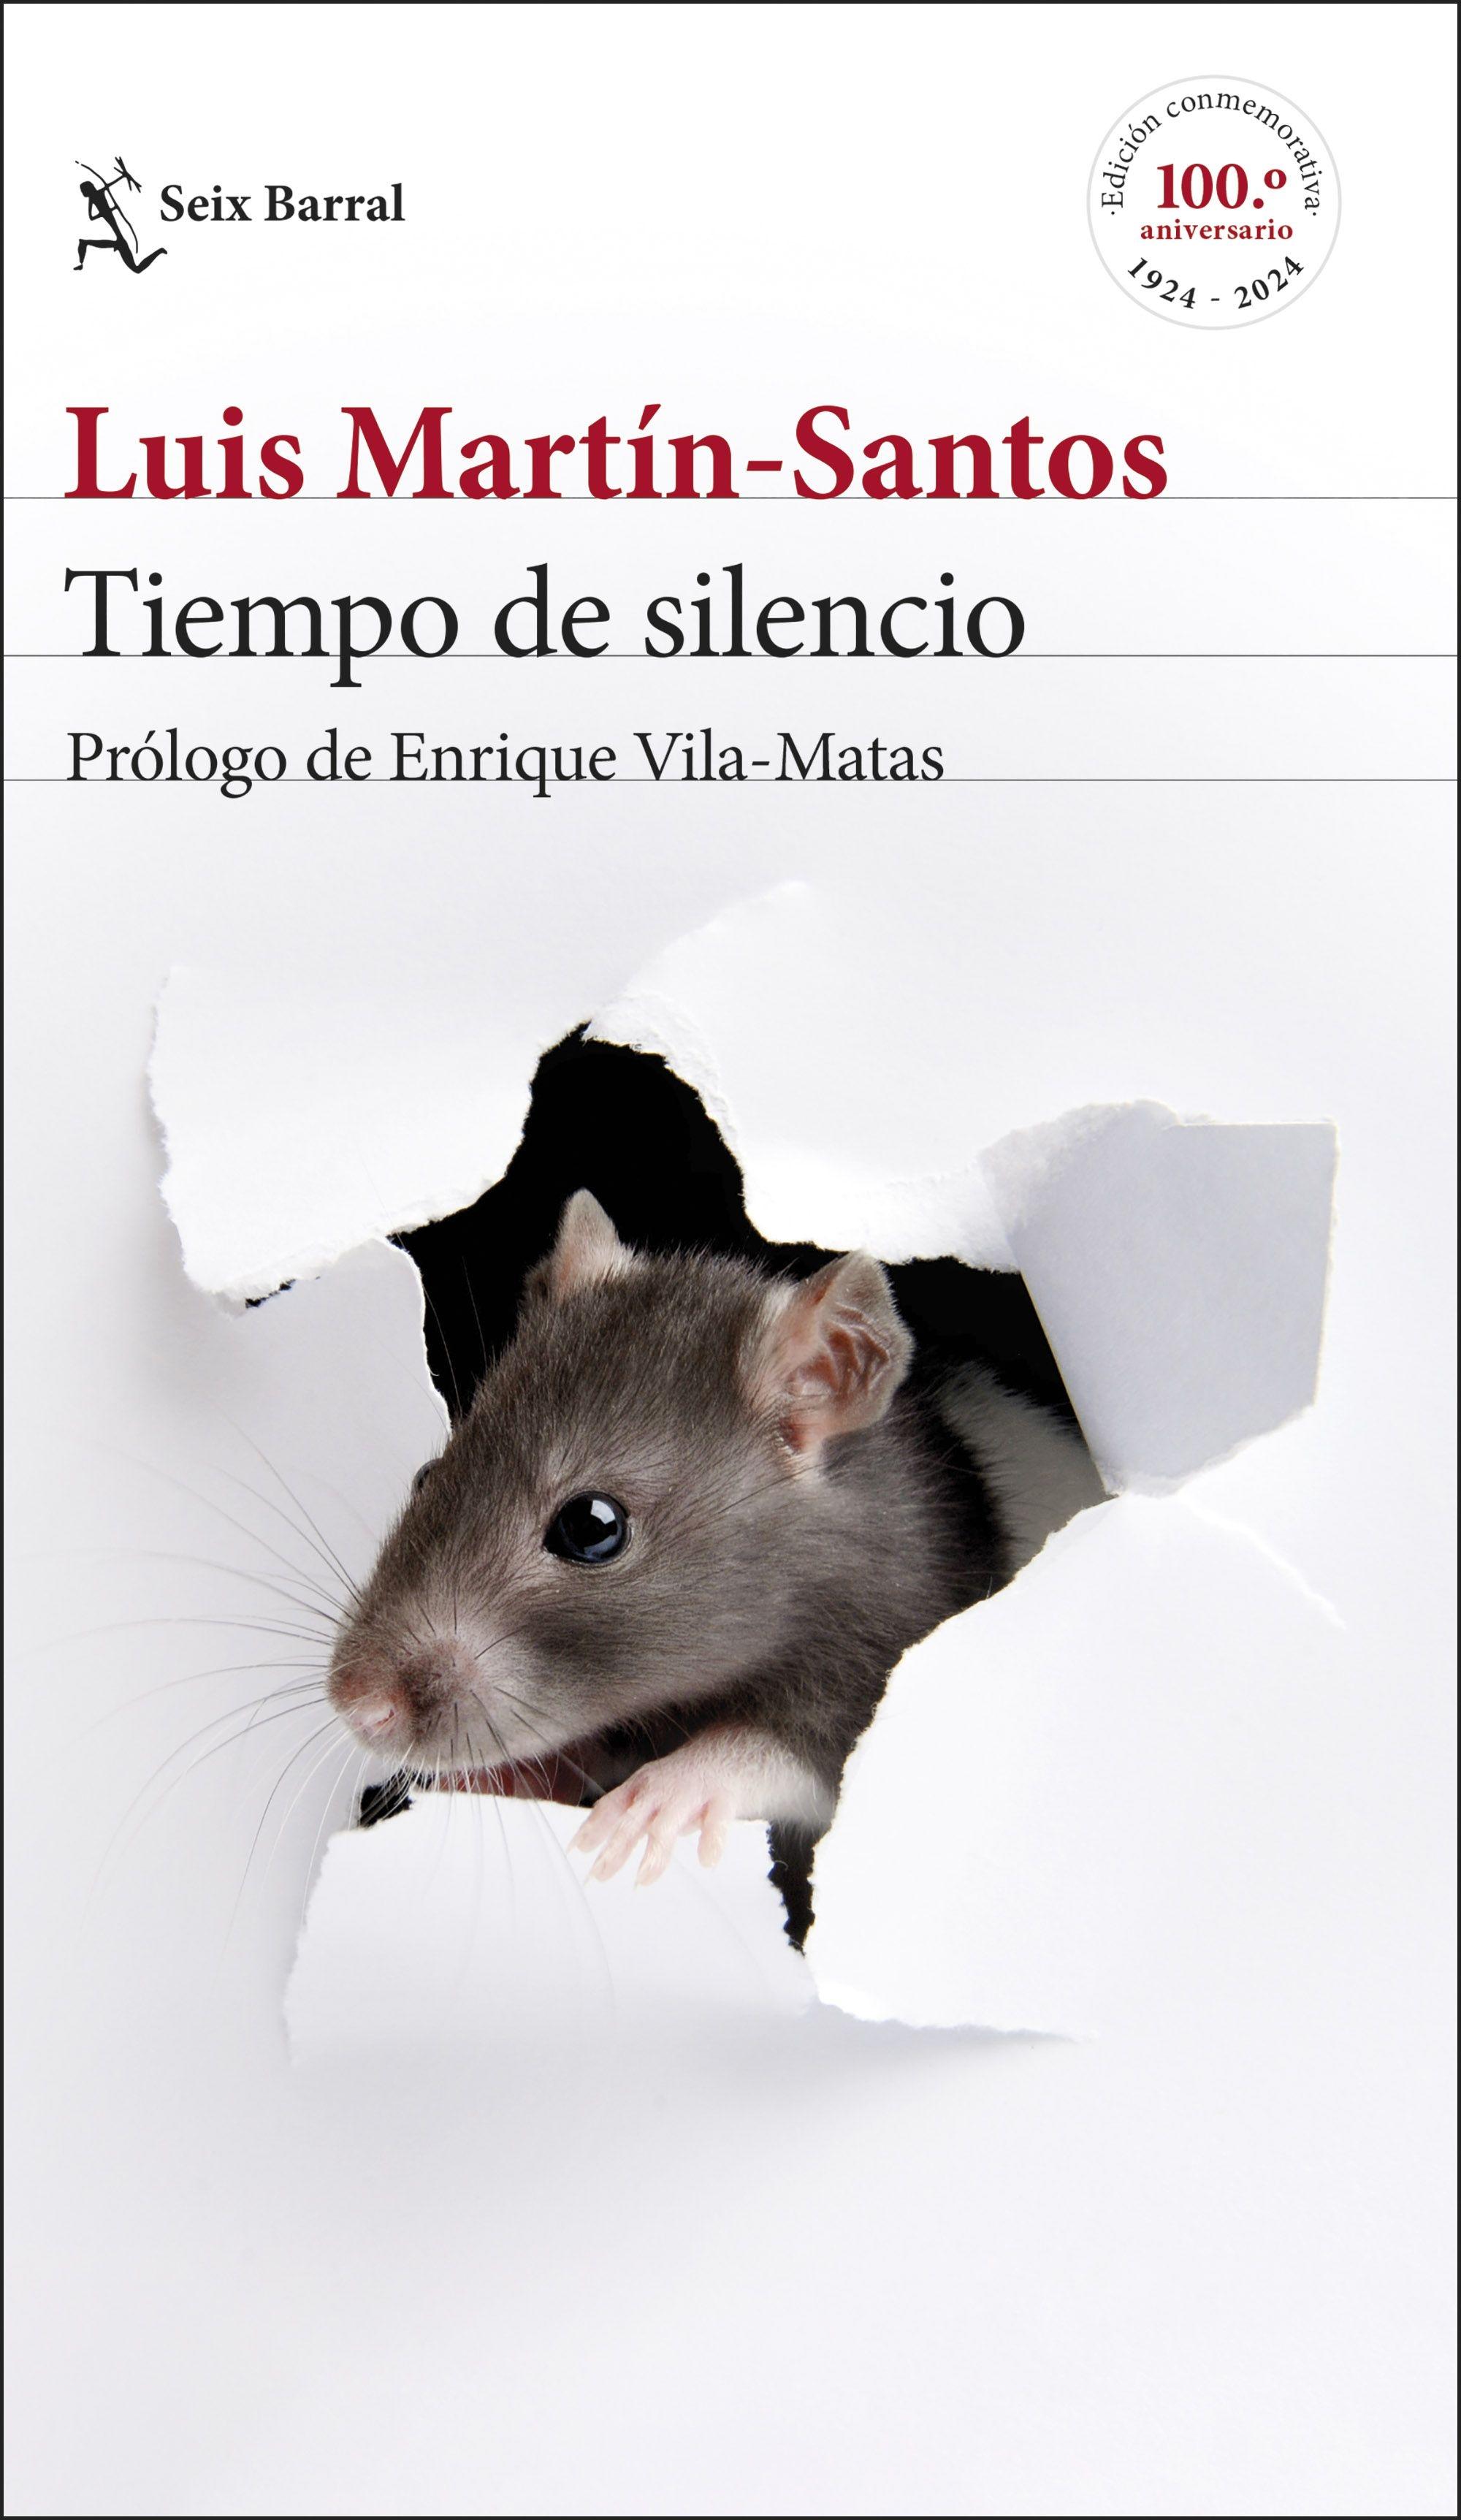 Tiempo de Silencio "Prólogo de Enrique Vila-Matas". 